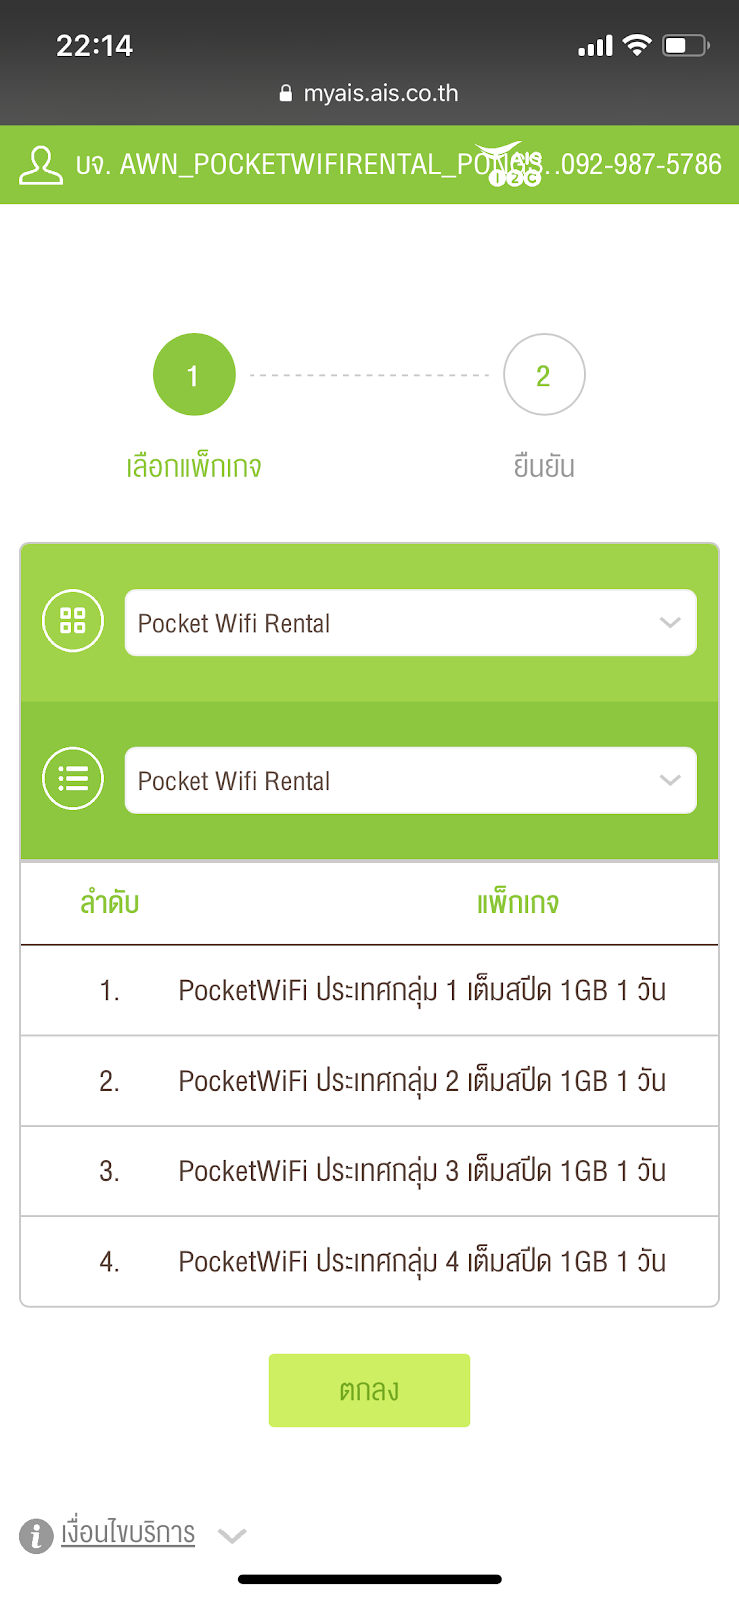 ลองใช้ AIS Pocket WiFi ใช้ง่ายขนาดไหน? คุ้มค่าหรือเปล่า?